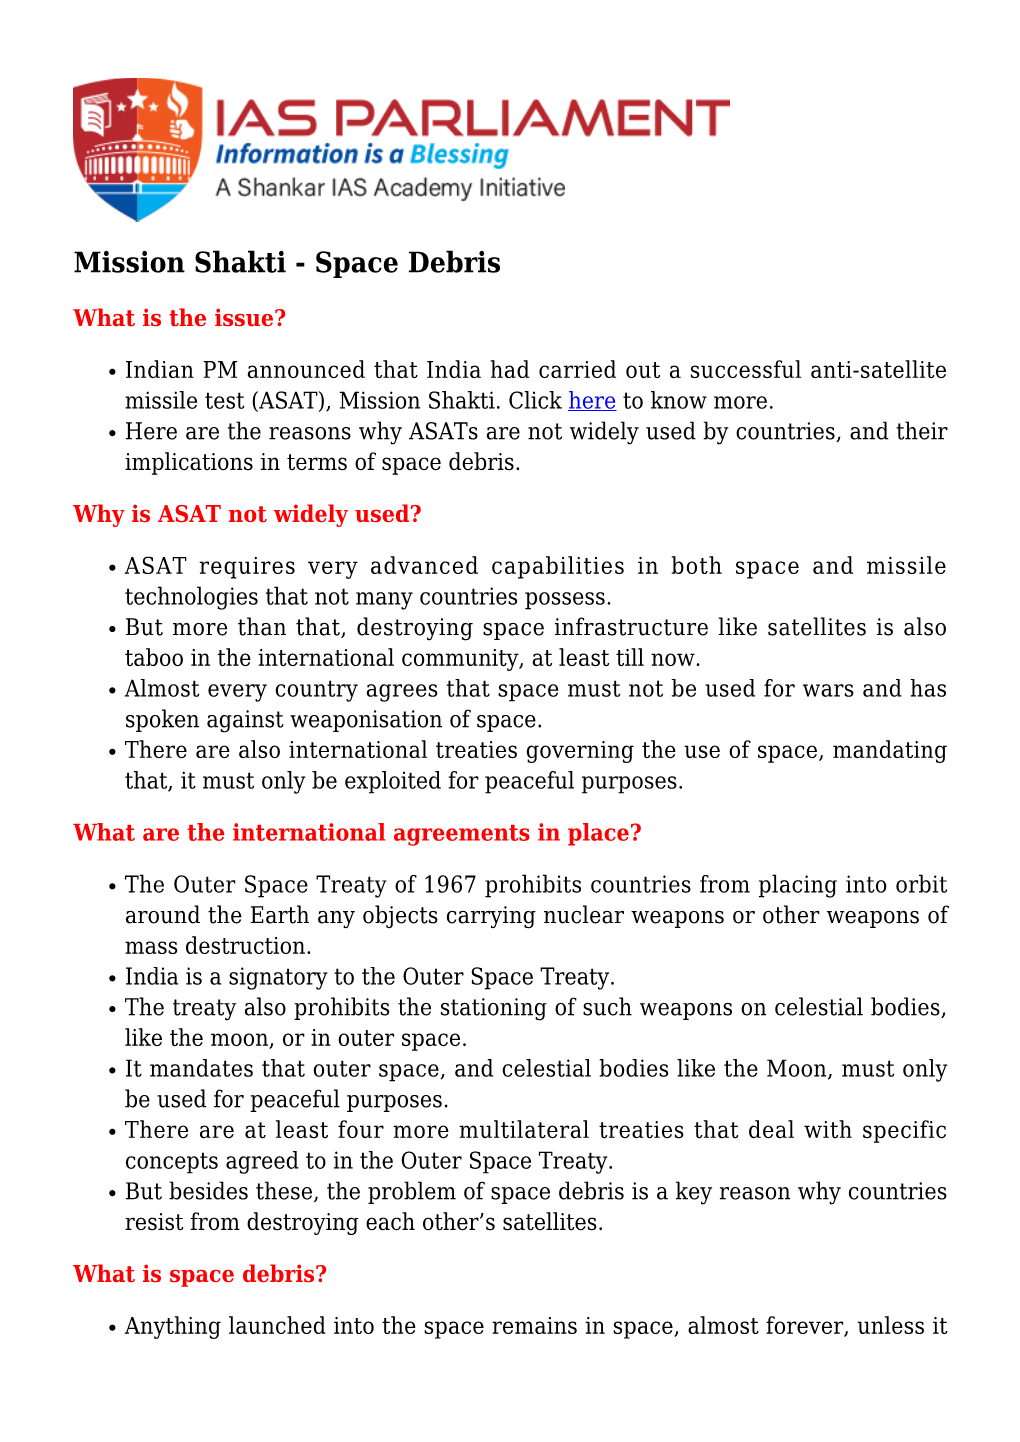 Mission Shakti - Space Debris